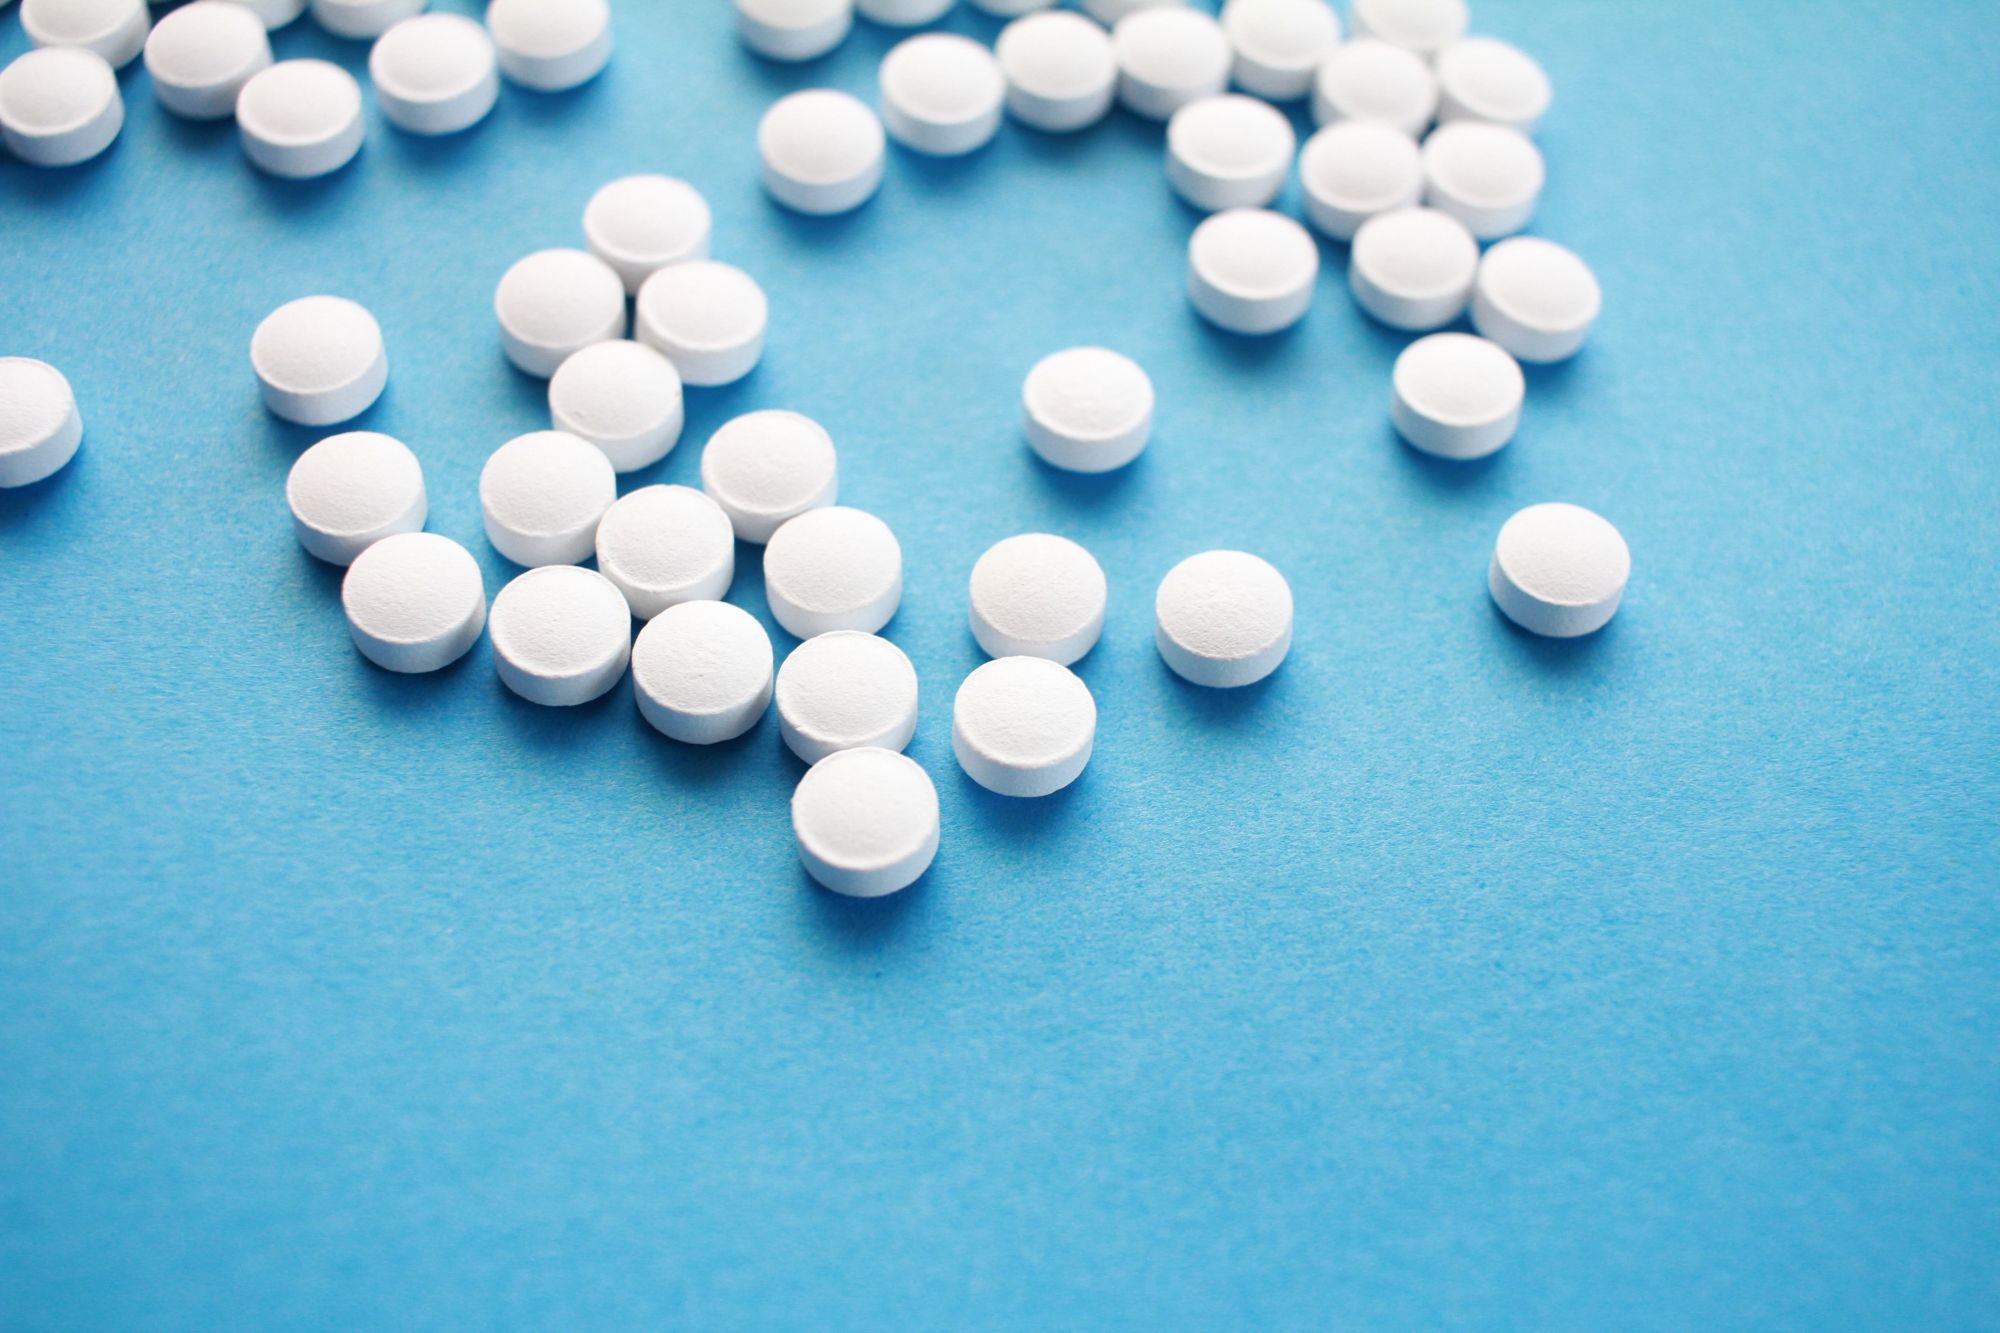 ΗΠΑ: Εγκρίθηκε το πρώτο χάπι αντισύλληψης χωρίς ιατρική συνταγή